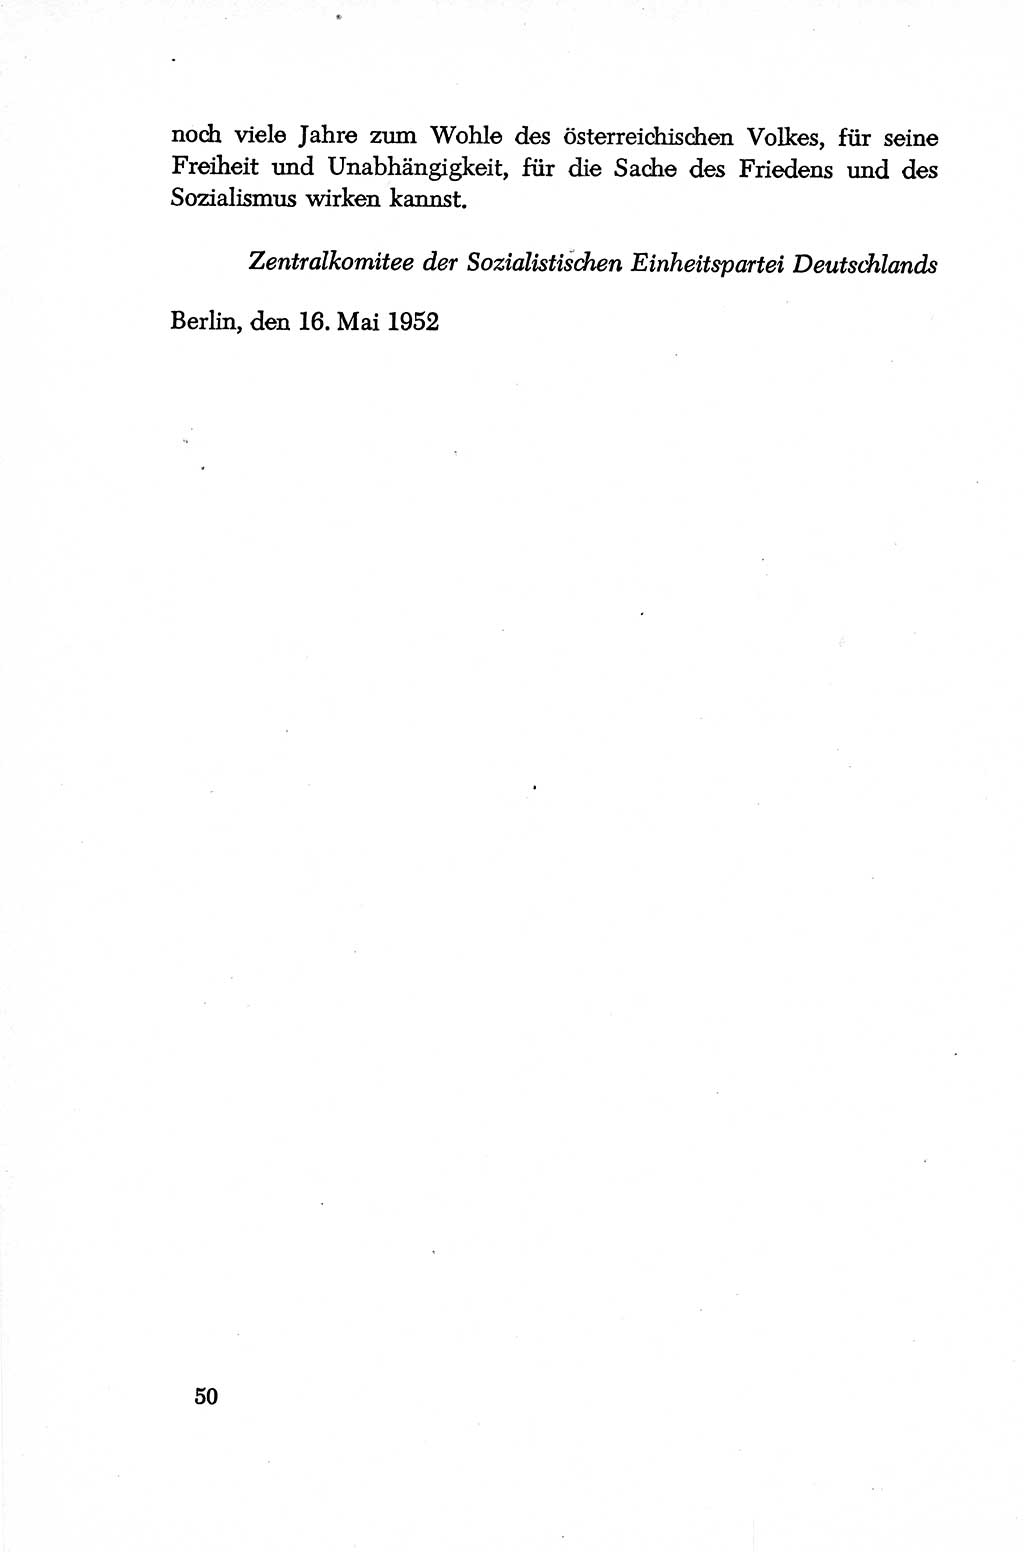 Dokumente der Sozialistischen Einheitspartei Deutschlands (SED) [Deutsche Demokratische Republik (DDR)] 1952-1953, Seite 50 (Dok. SED DDR 1952-1953, S. 50)